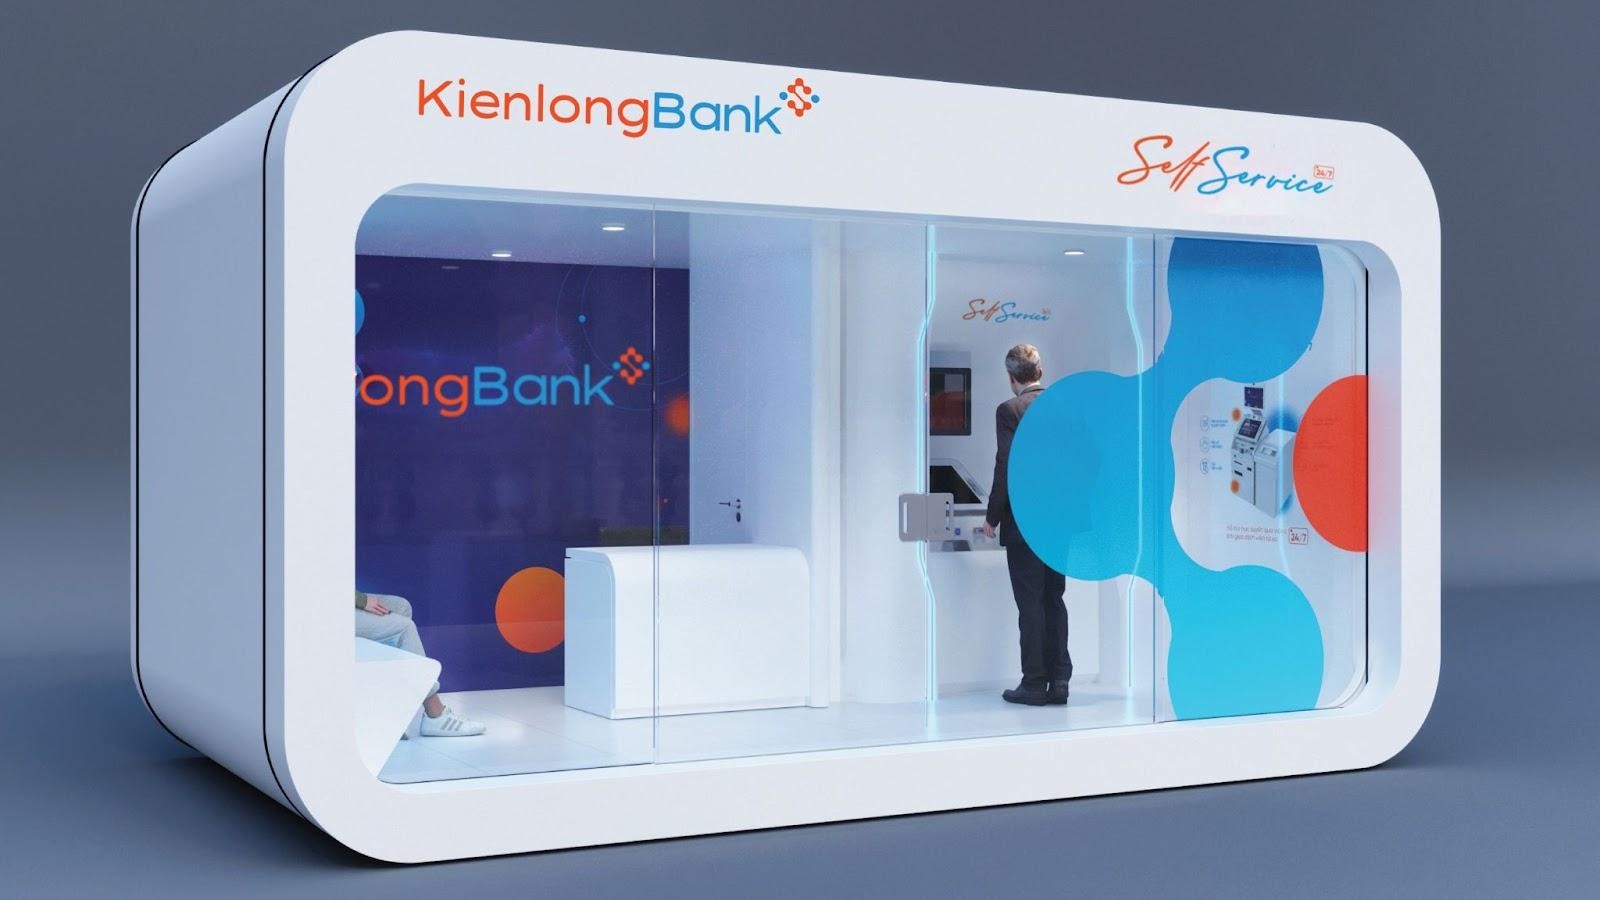 KienlongBank hỗ trợ vùng sâu, vùng xa các hoạt động giáo dục và tác vụ ngân hàng, dịch vụ công